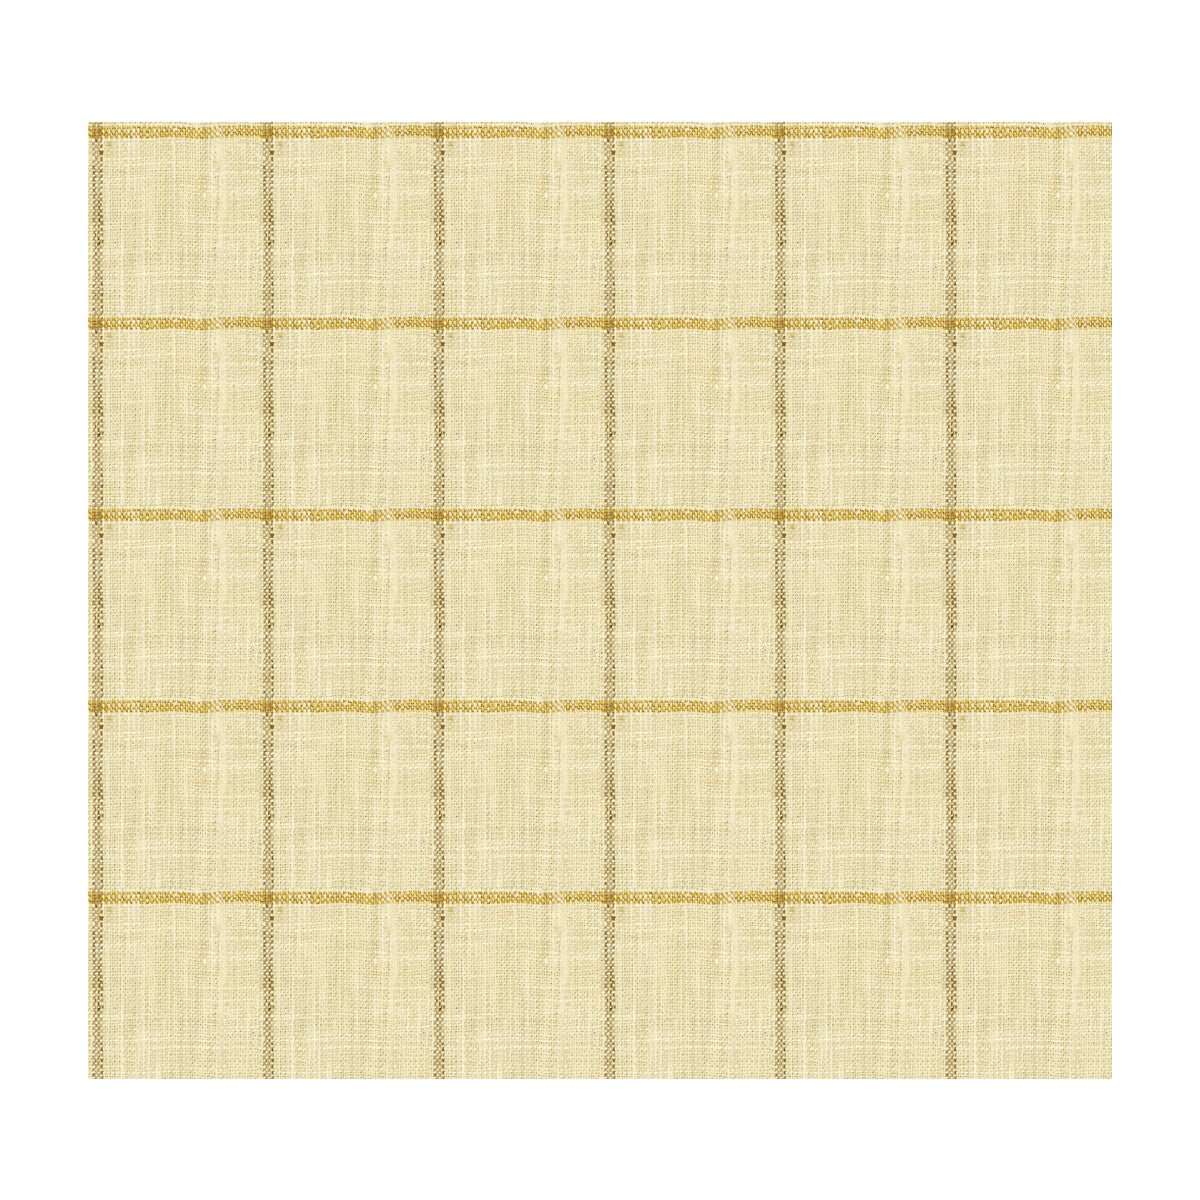 Kravet Basics fabric in 34085-416 color - pattern 34085.416.0 - by Kravet Basics